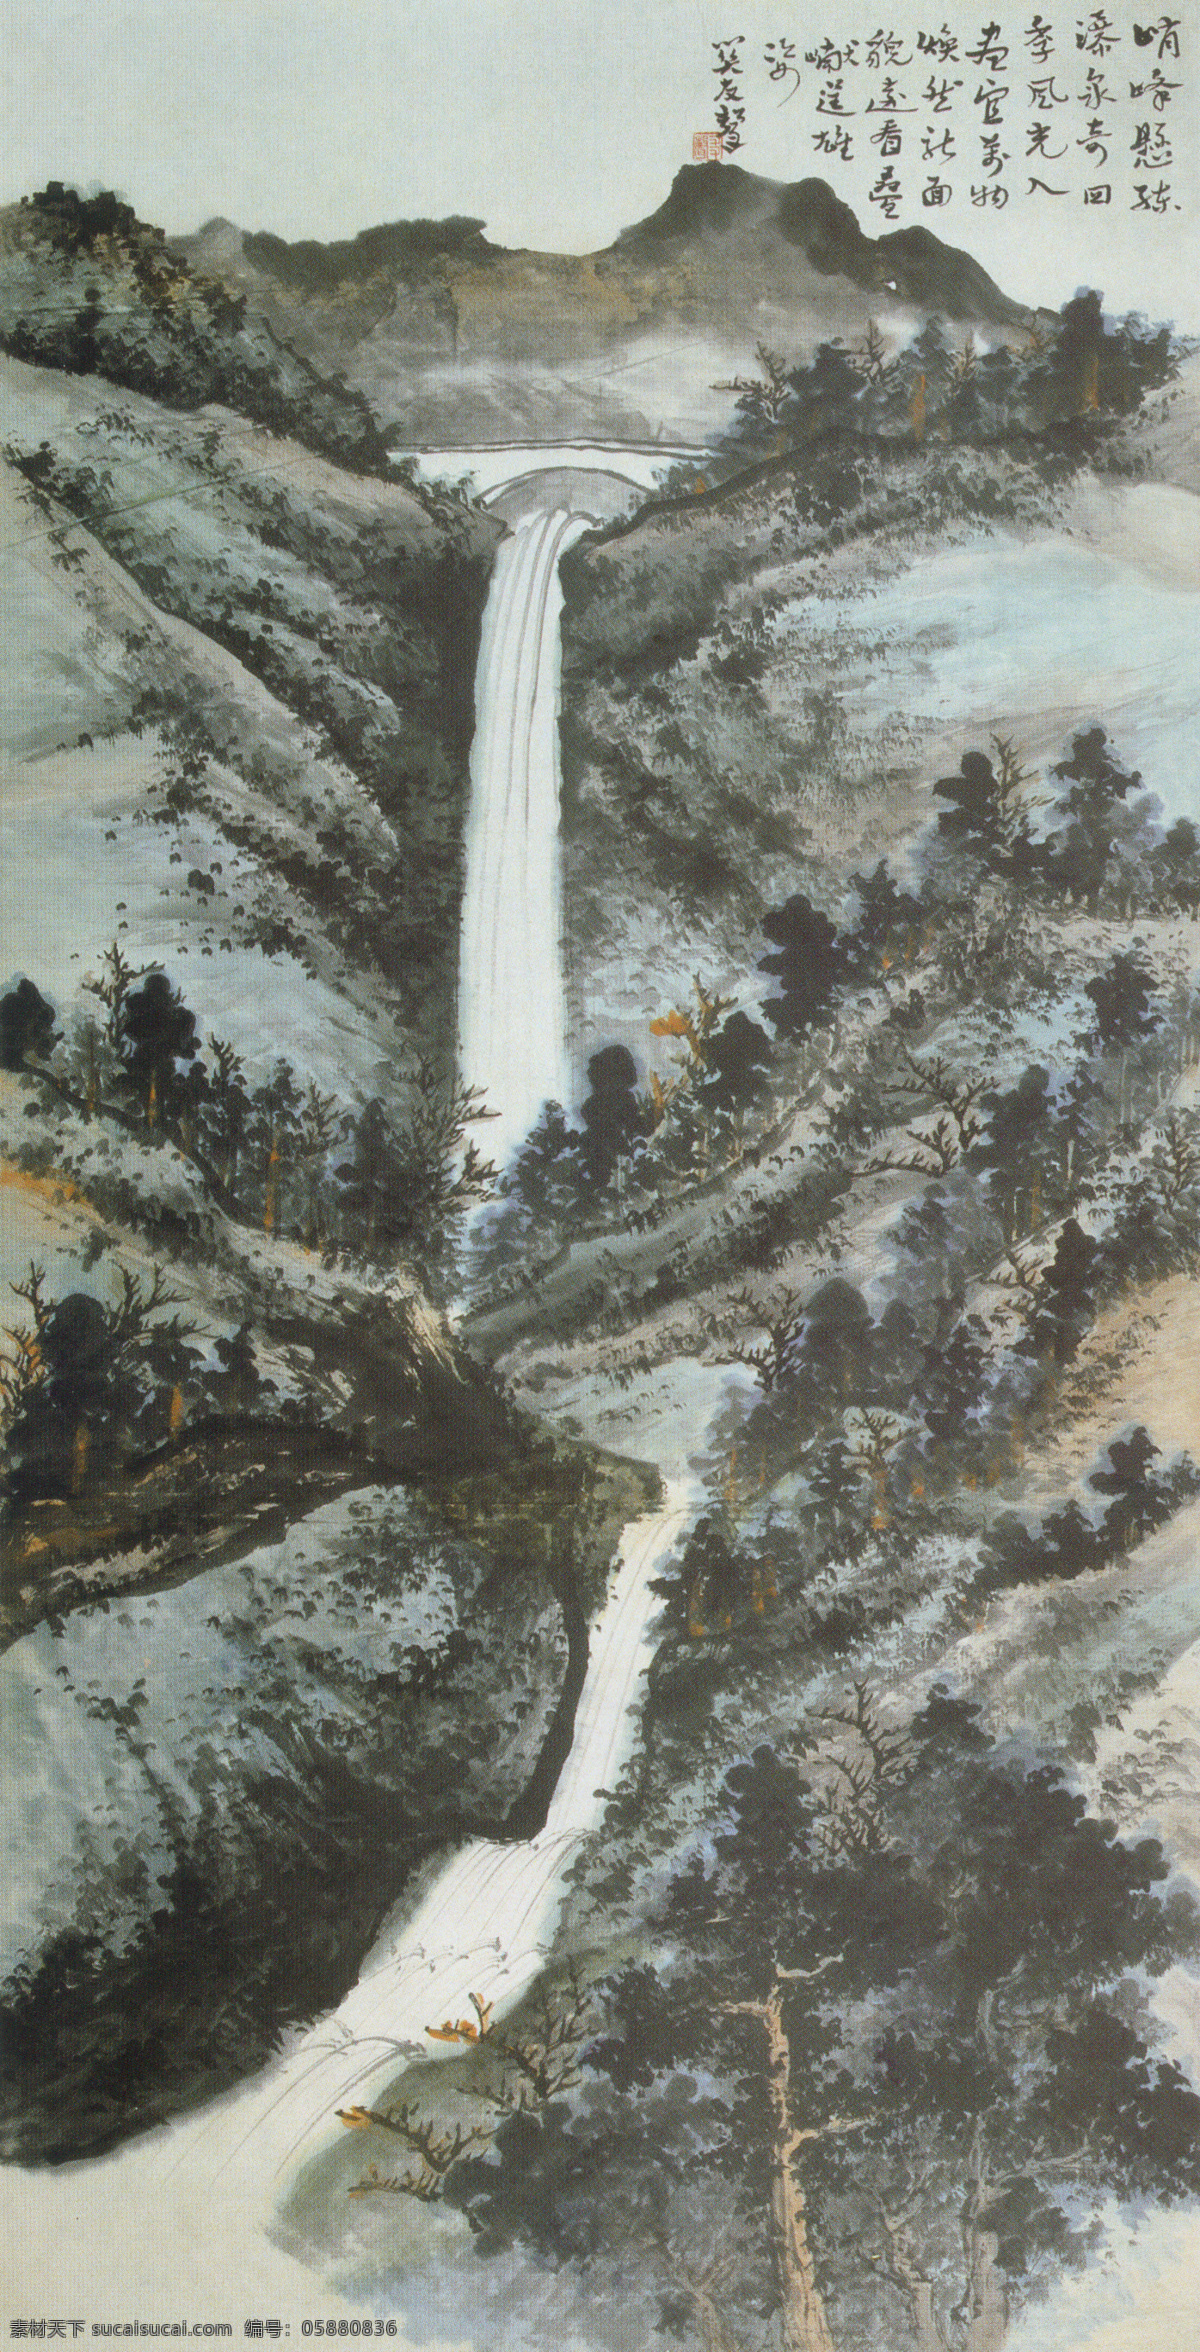 泰山 黑龙潭 图 传统 水墨 山水 山林 中国 现代 篇 文化艺术 绘画书法